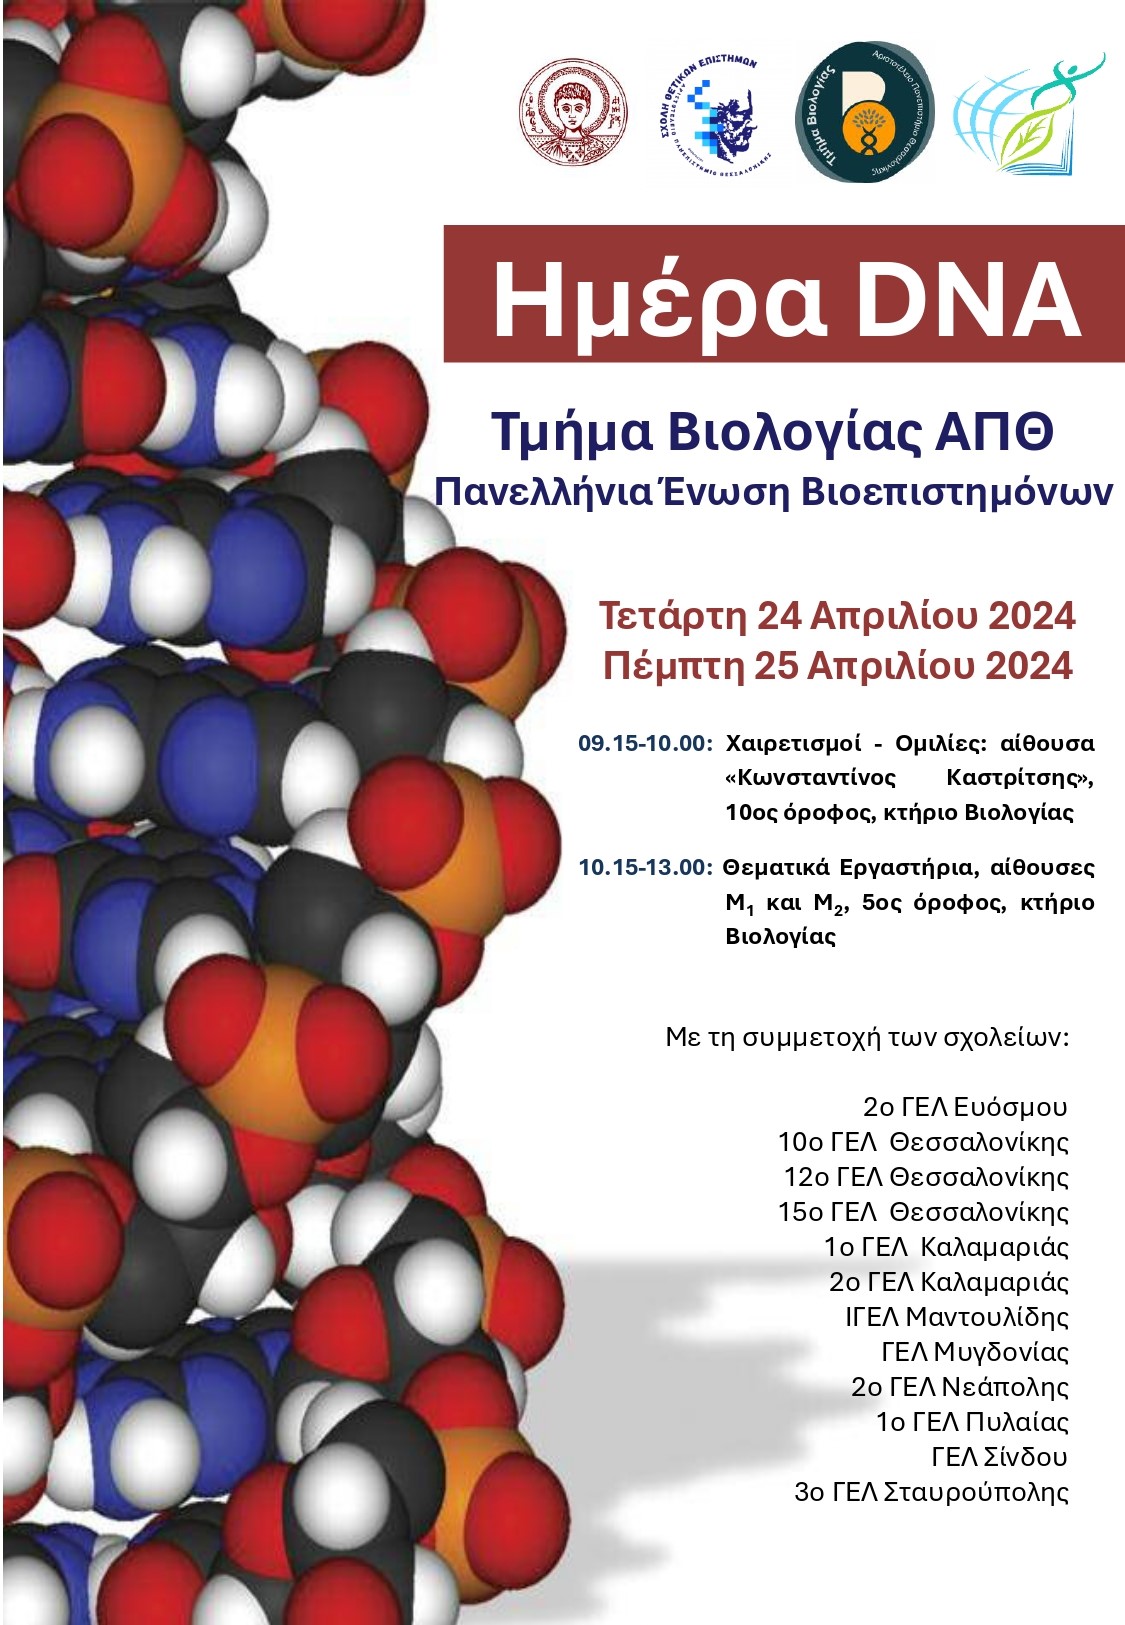 Εορτασμός Παγκόσμιας Ημέρας DNA στο ΑΠΘ: Γνωριμία μαθητών με την επιστήμη της Βιολογίας